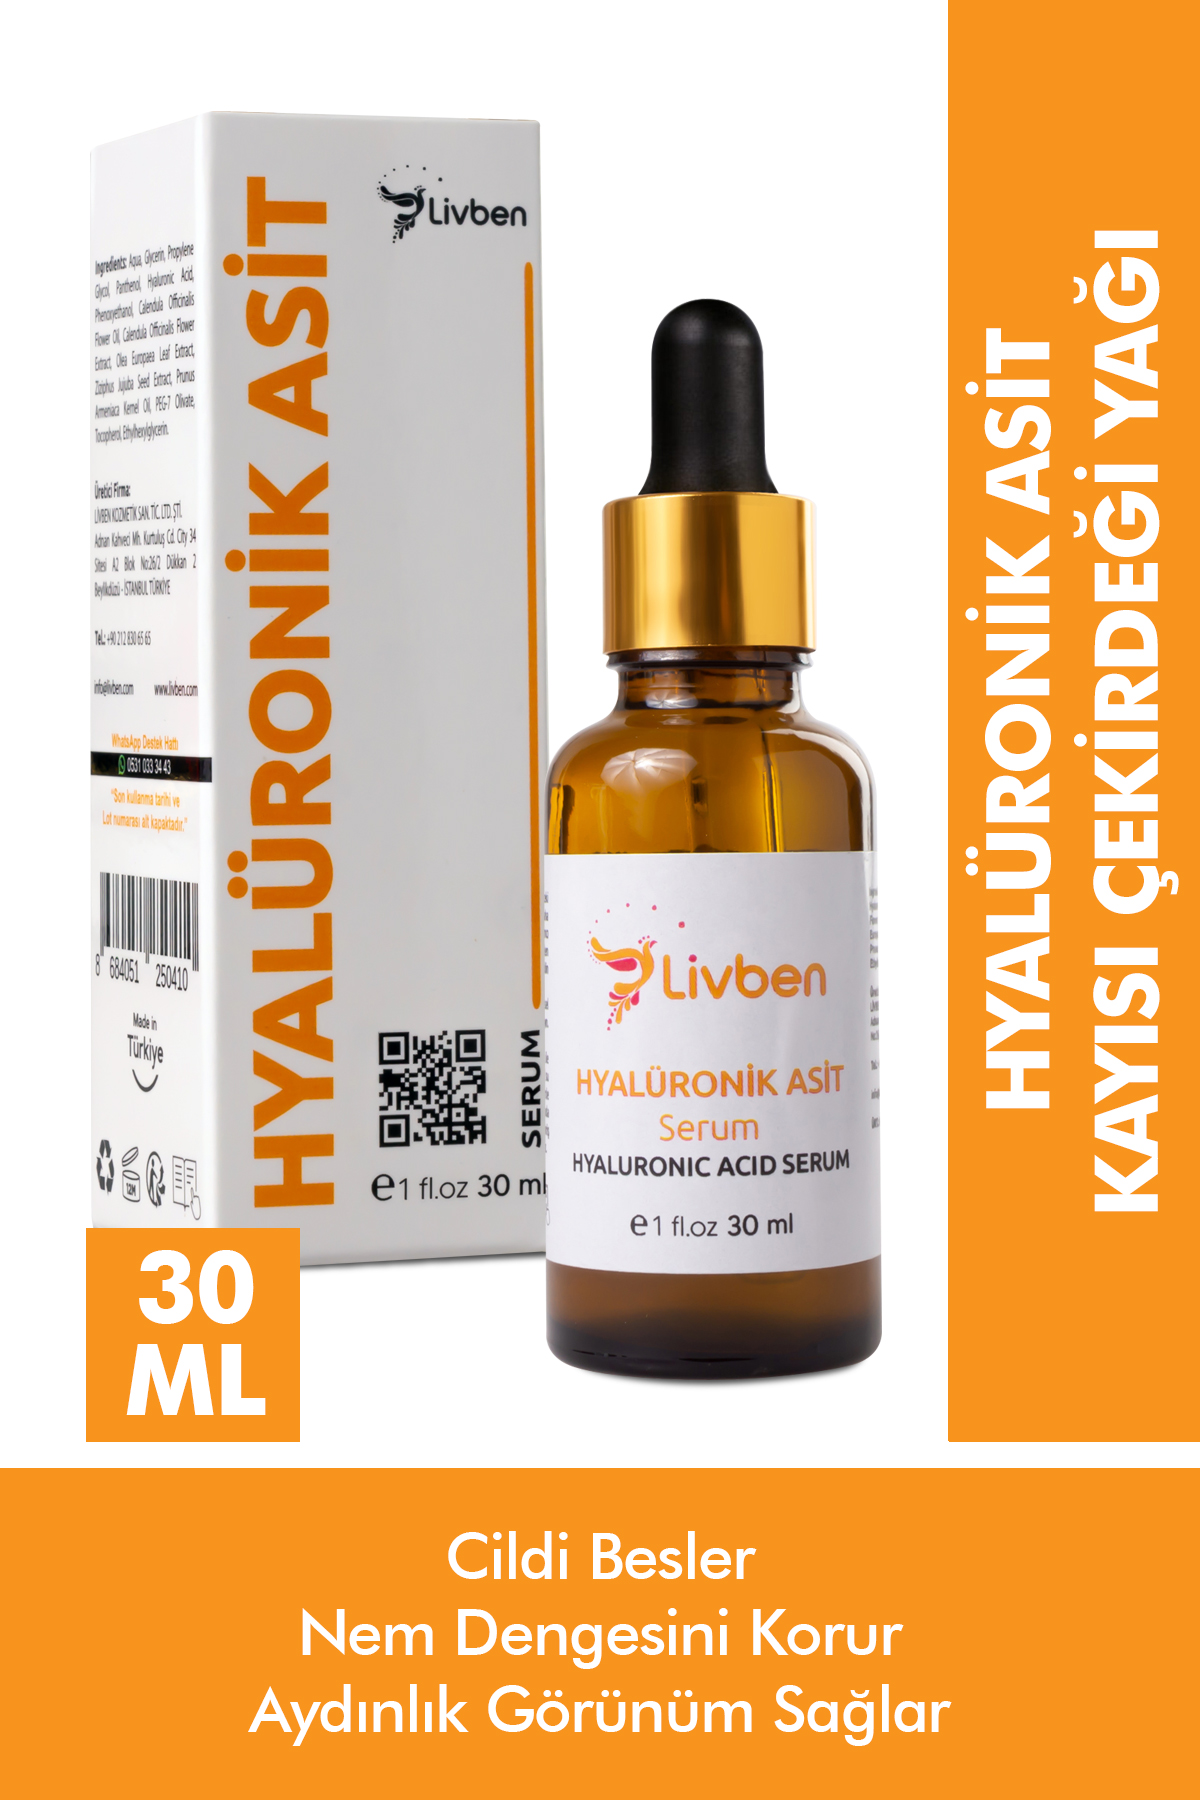 Livben ® Aloe Vera Therapy Vücut Losyonu 200 ml ve Hyalüronik Asit Serum 30 ml